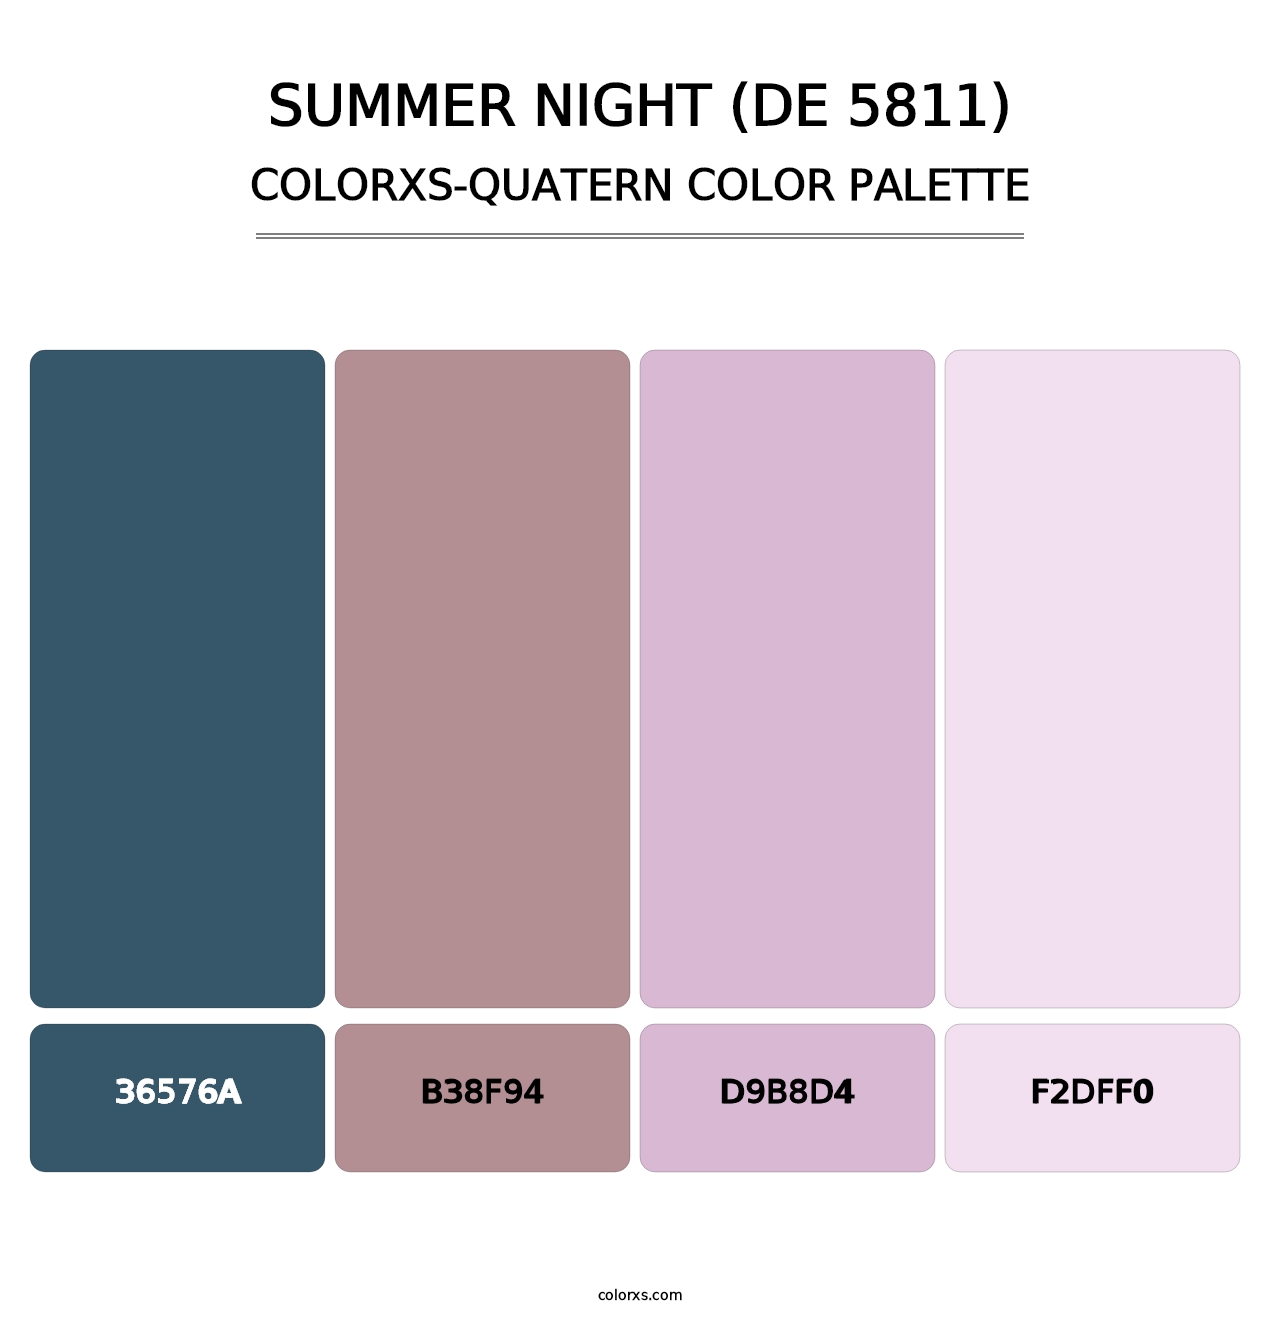 Summer Night (DE 5811) - Colorxs Quatern Palette